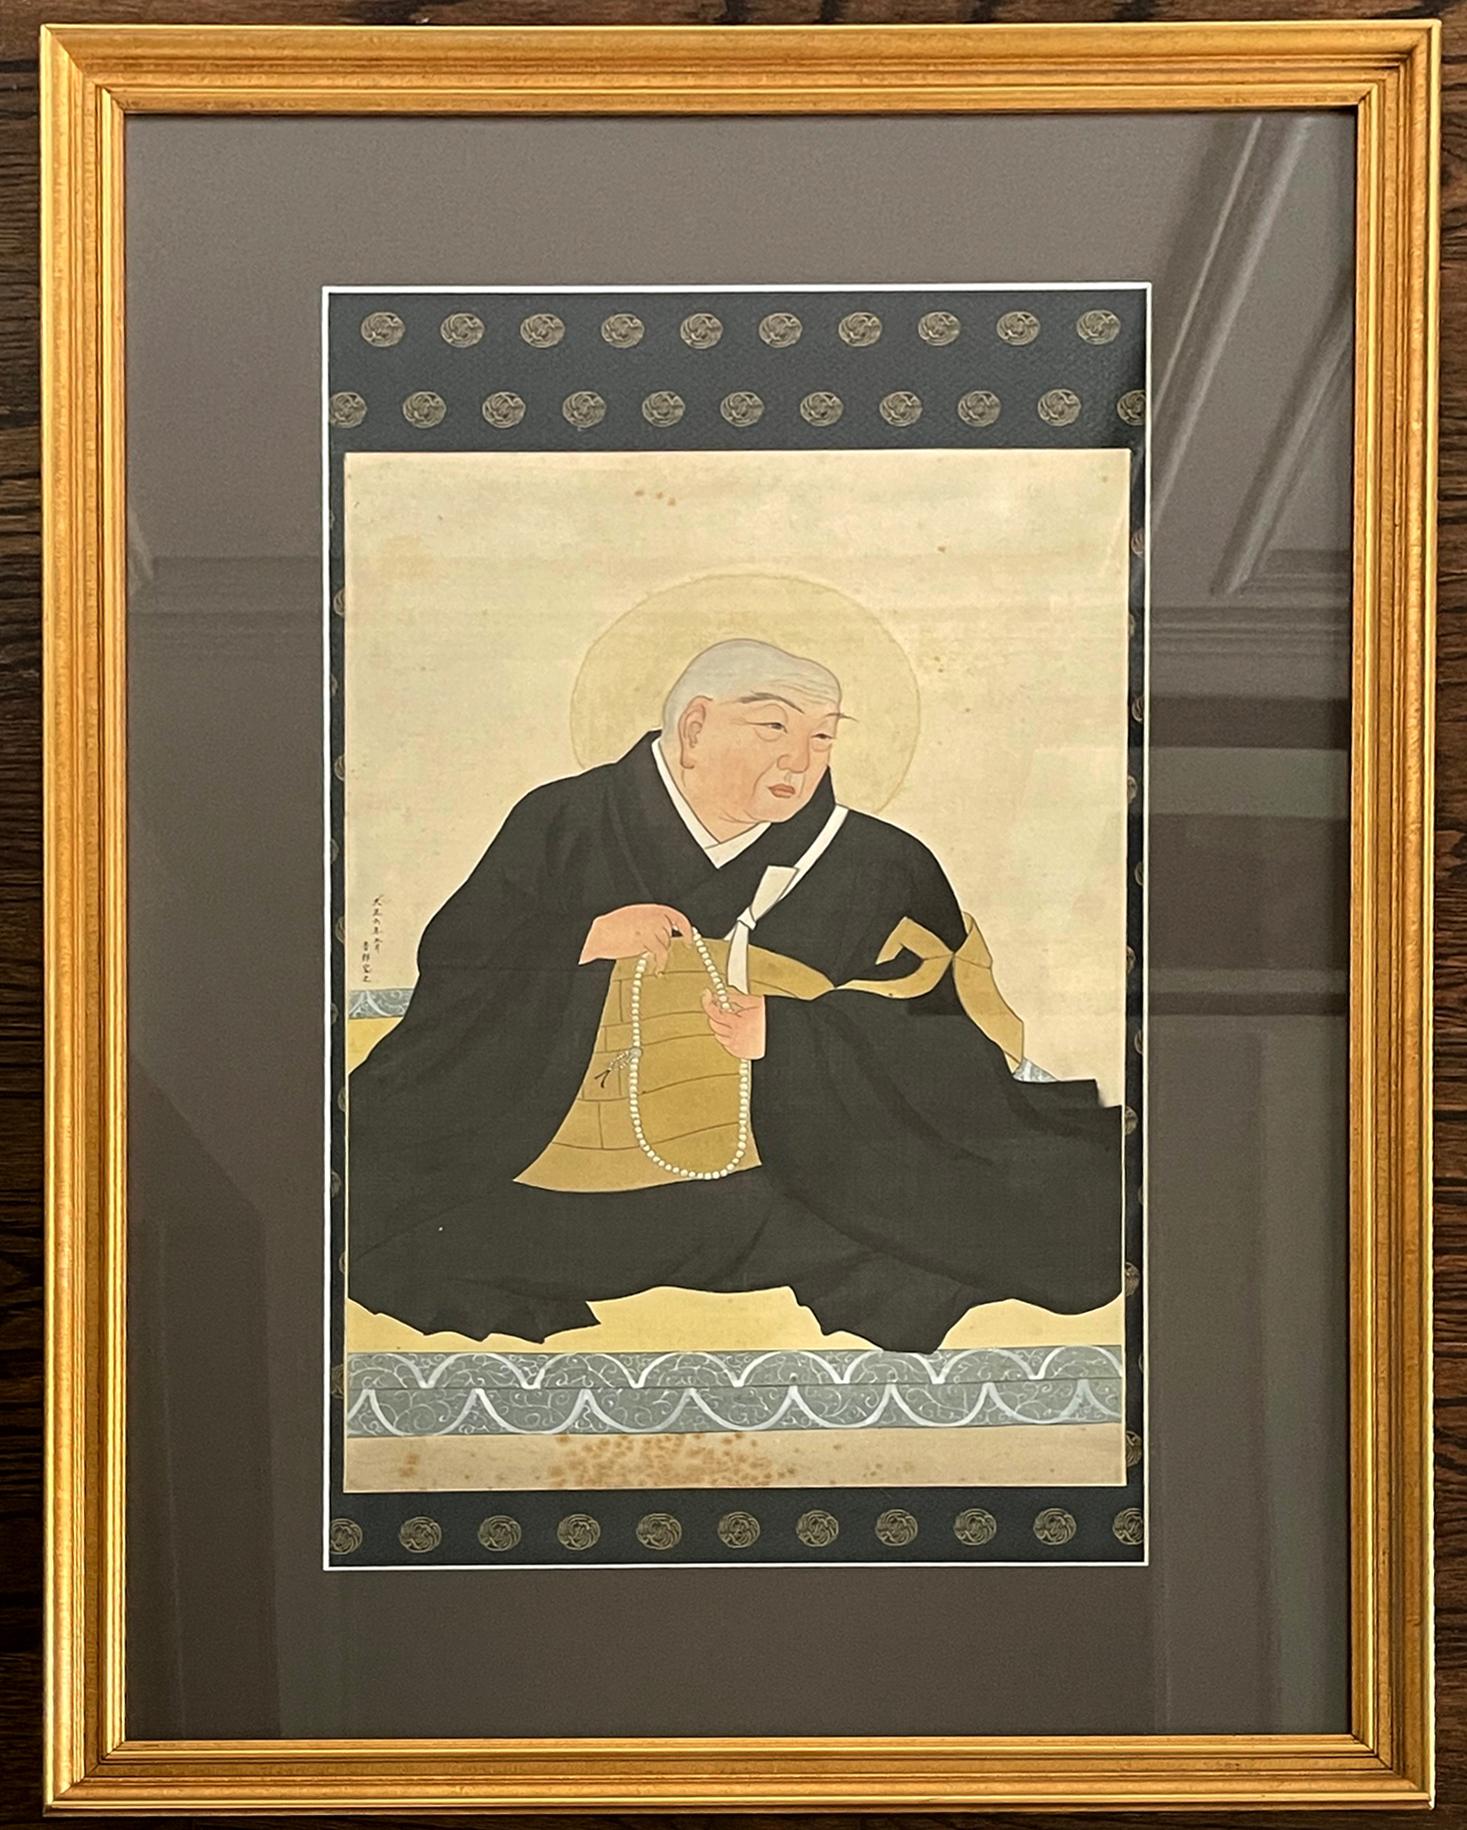 Das Gemälde eines buddhistischen Priesters in Gouache auf Seide des japanischen Malers Goro Kamenaga (1890-1955). Das sehr realistische Gemälde zeigt eine sitzende Figur, die ein buddhistisches Gewand mit einem darüber gebundenen Kesa trägt und eine